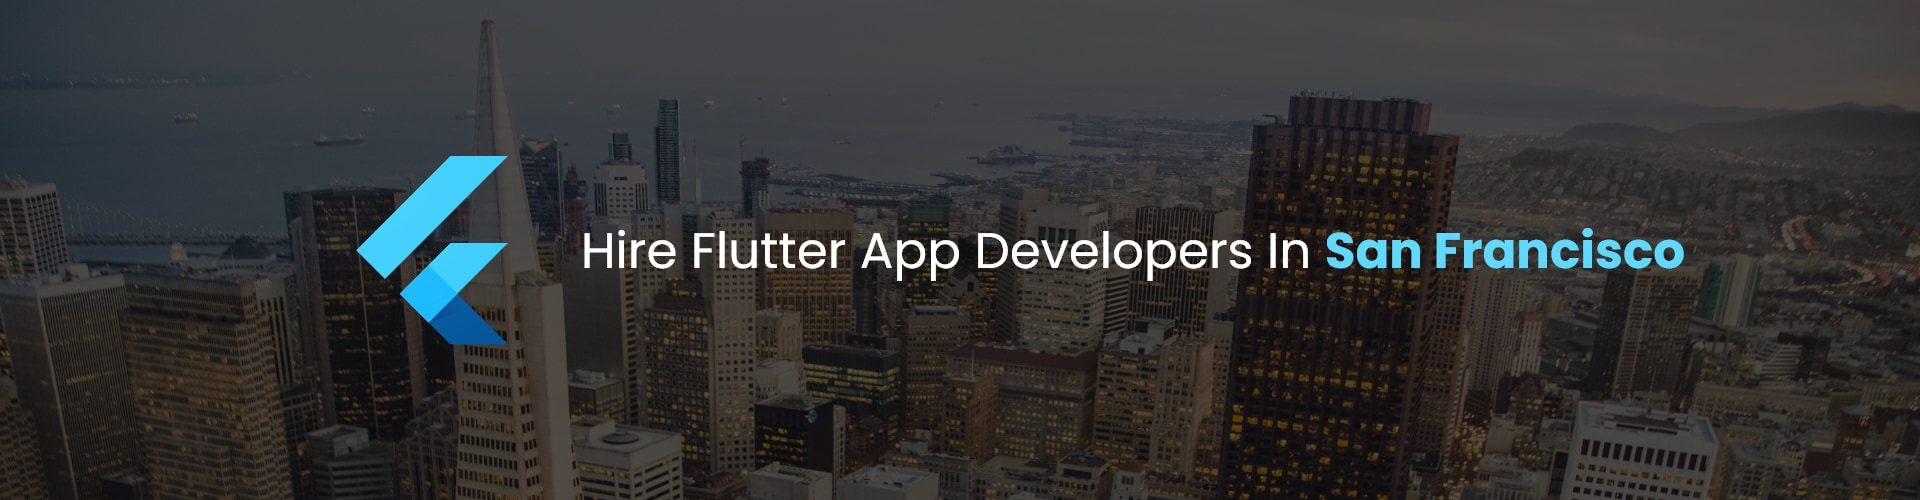 flutter app developers in san francisco